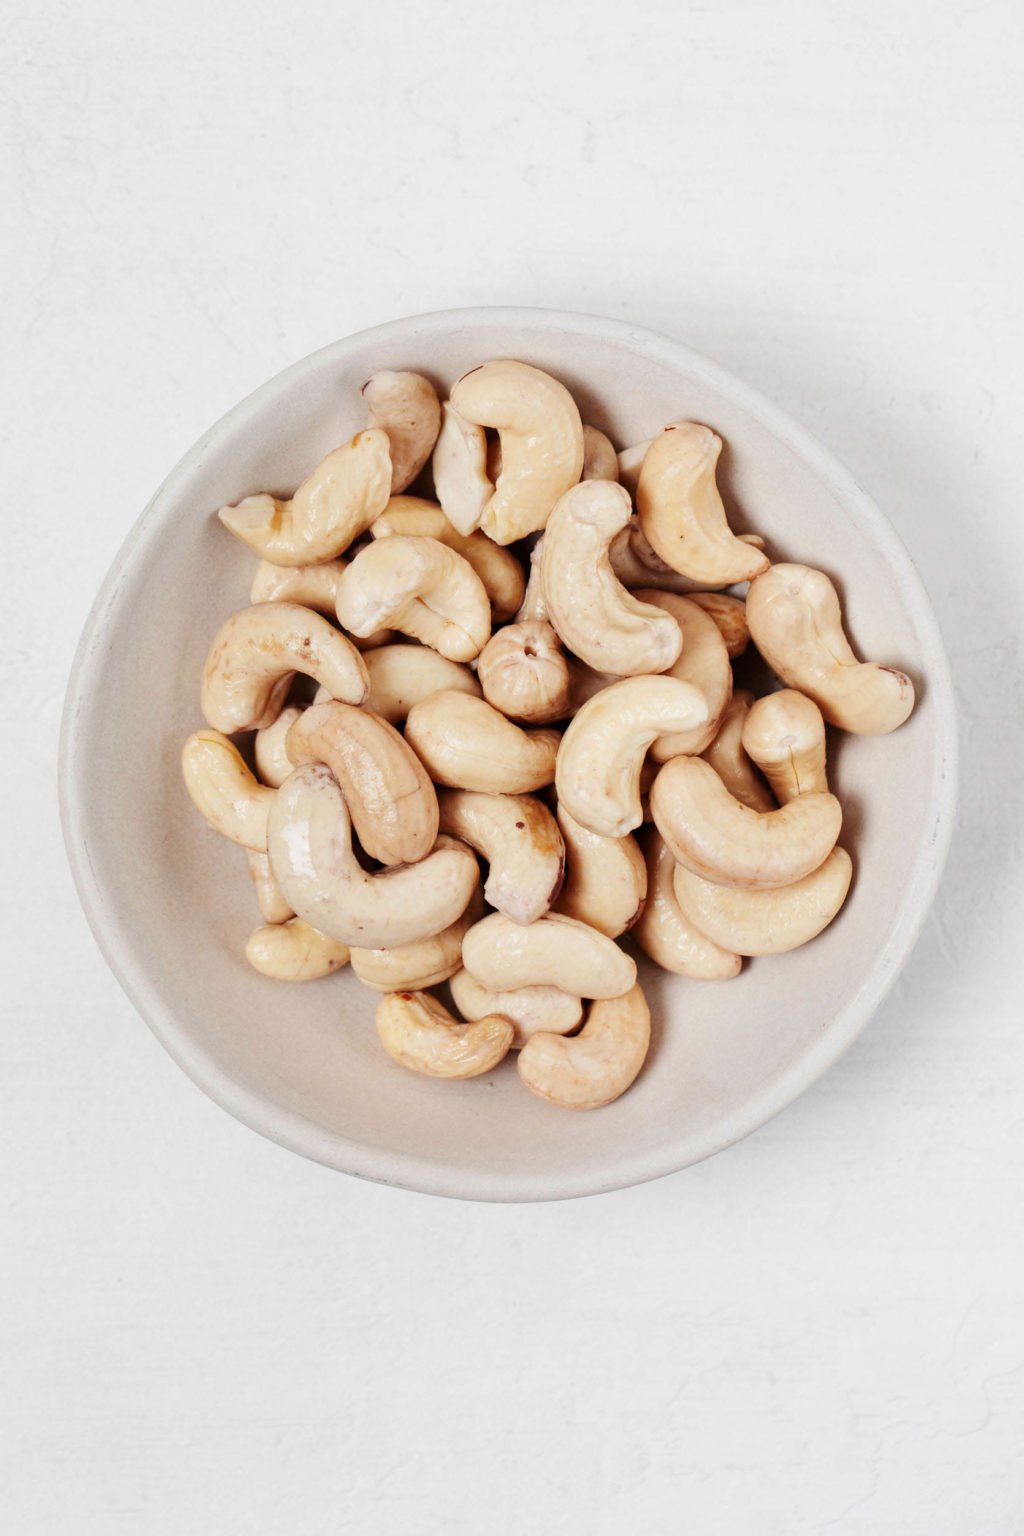 Kuva valkoisen kulhon päällä, joka on täynnä tavallisia cashewpähkinöitä.  Se lepää valkoisella pinnalla.